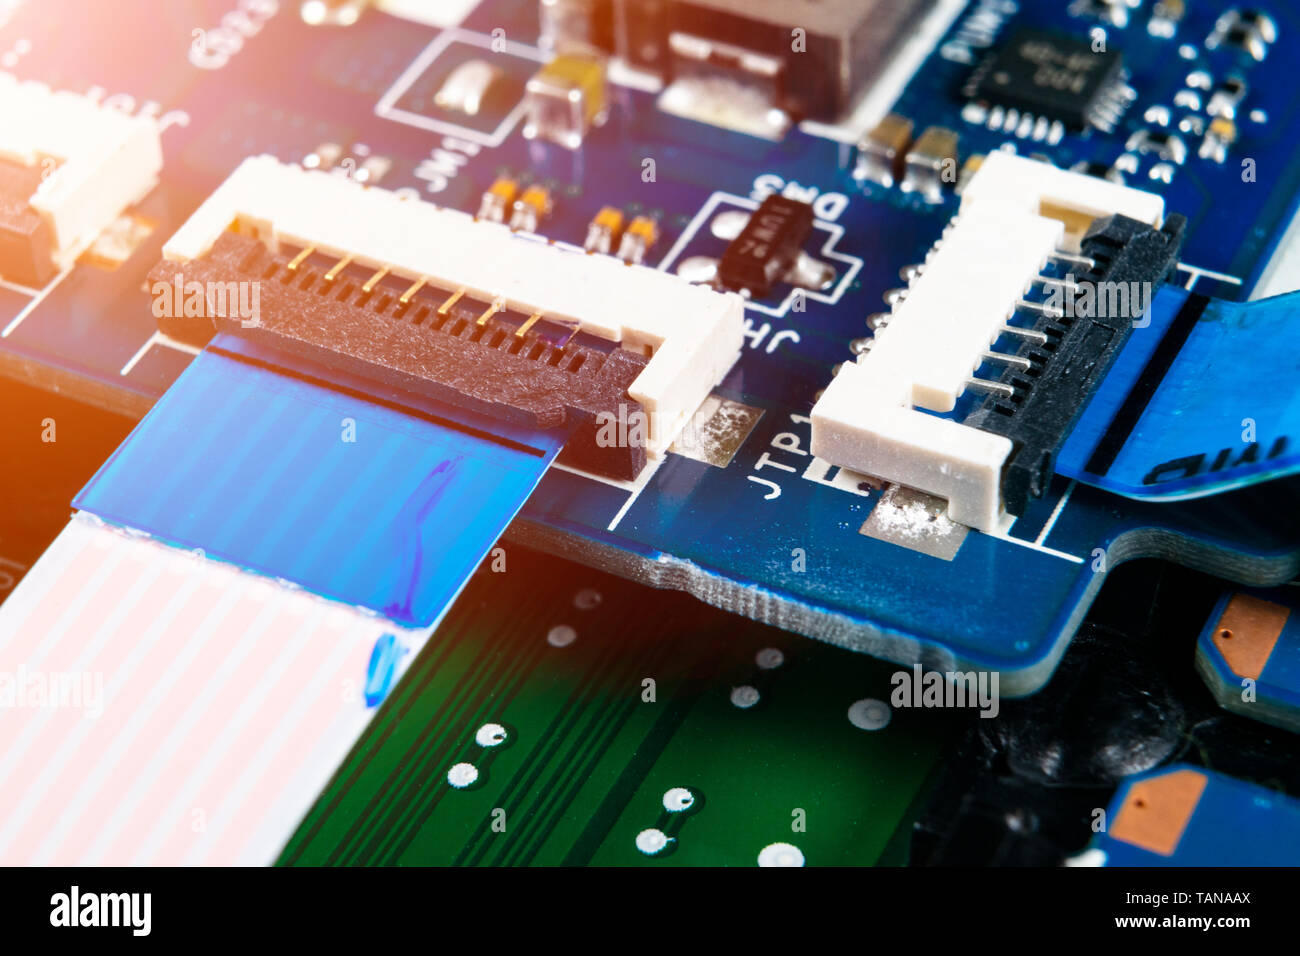 Makroaufnahme der Platine mit Widerständen Mikrochips und elektronische Komponenten. Computer Hardware Technologie. Integrierte Kommunikation Prozessor. Inf Stockfoto